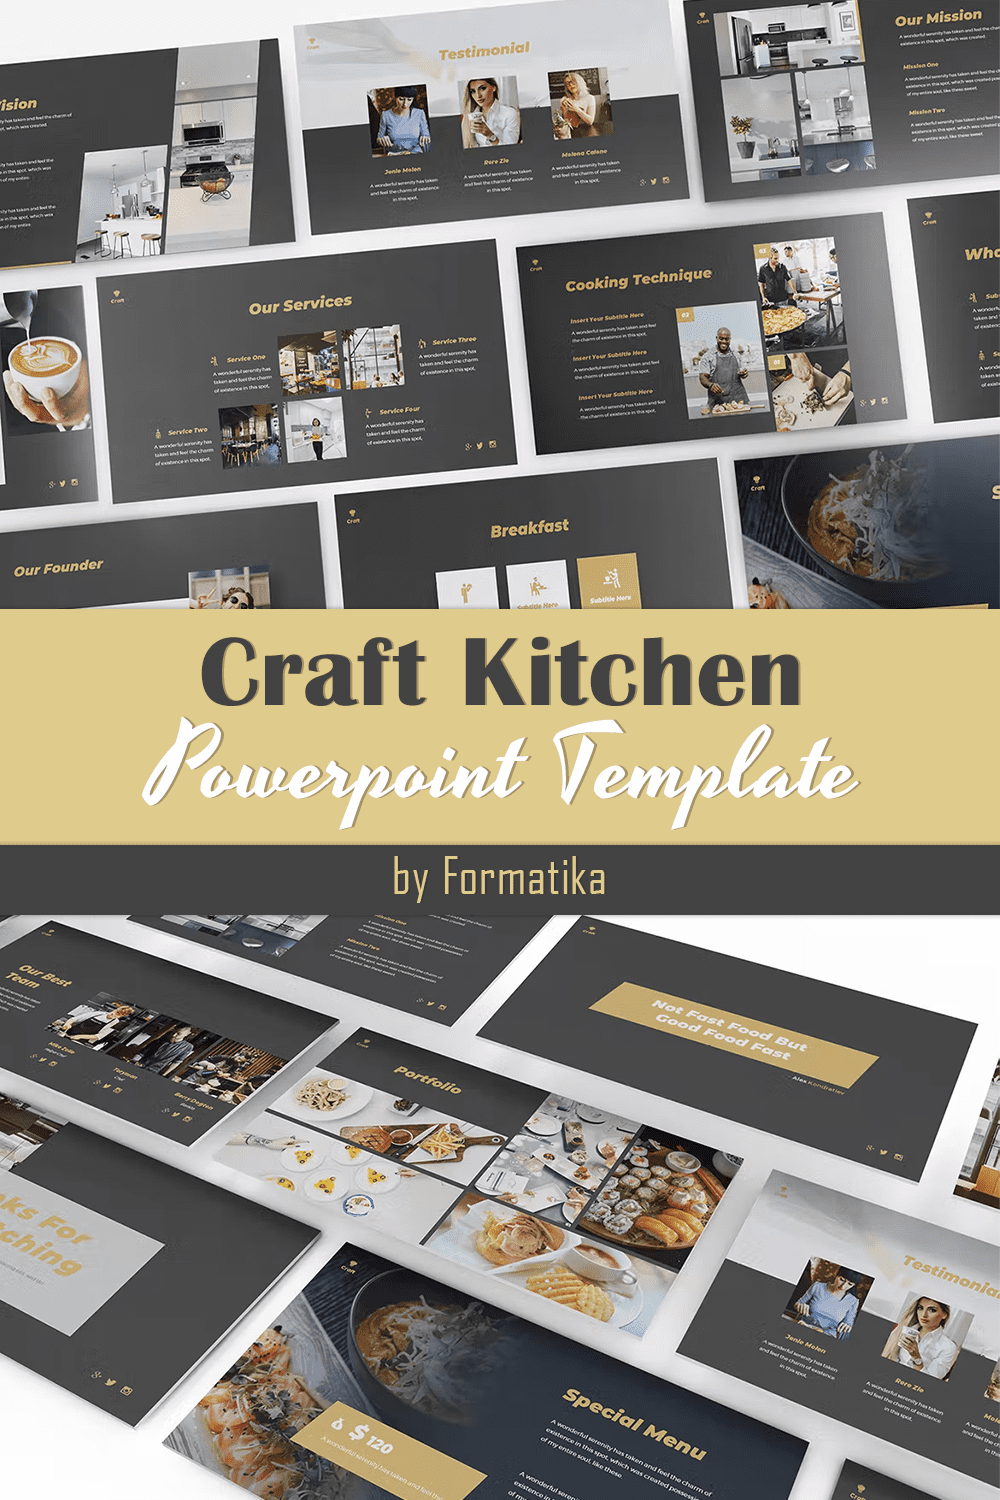 Craft Kitchen Powerpoint Template - Pinterest.